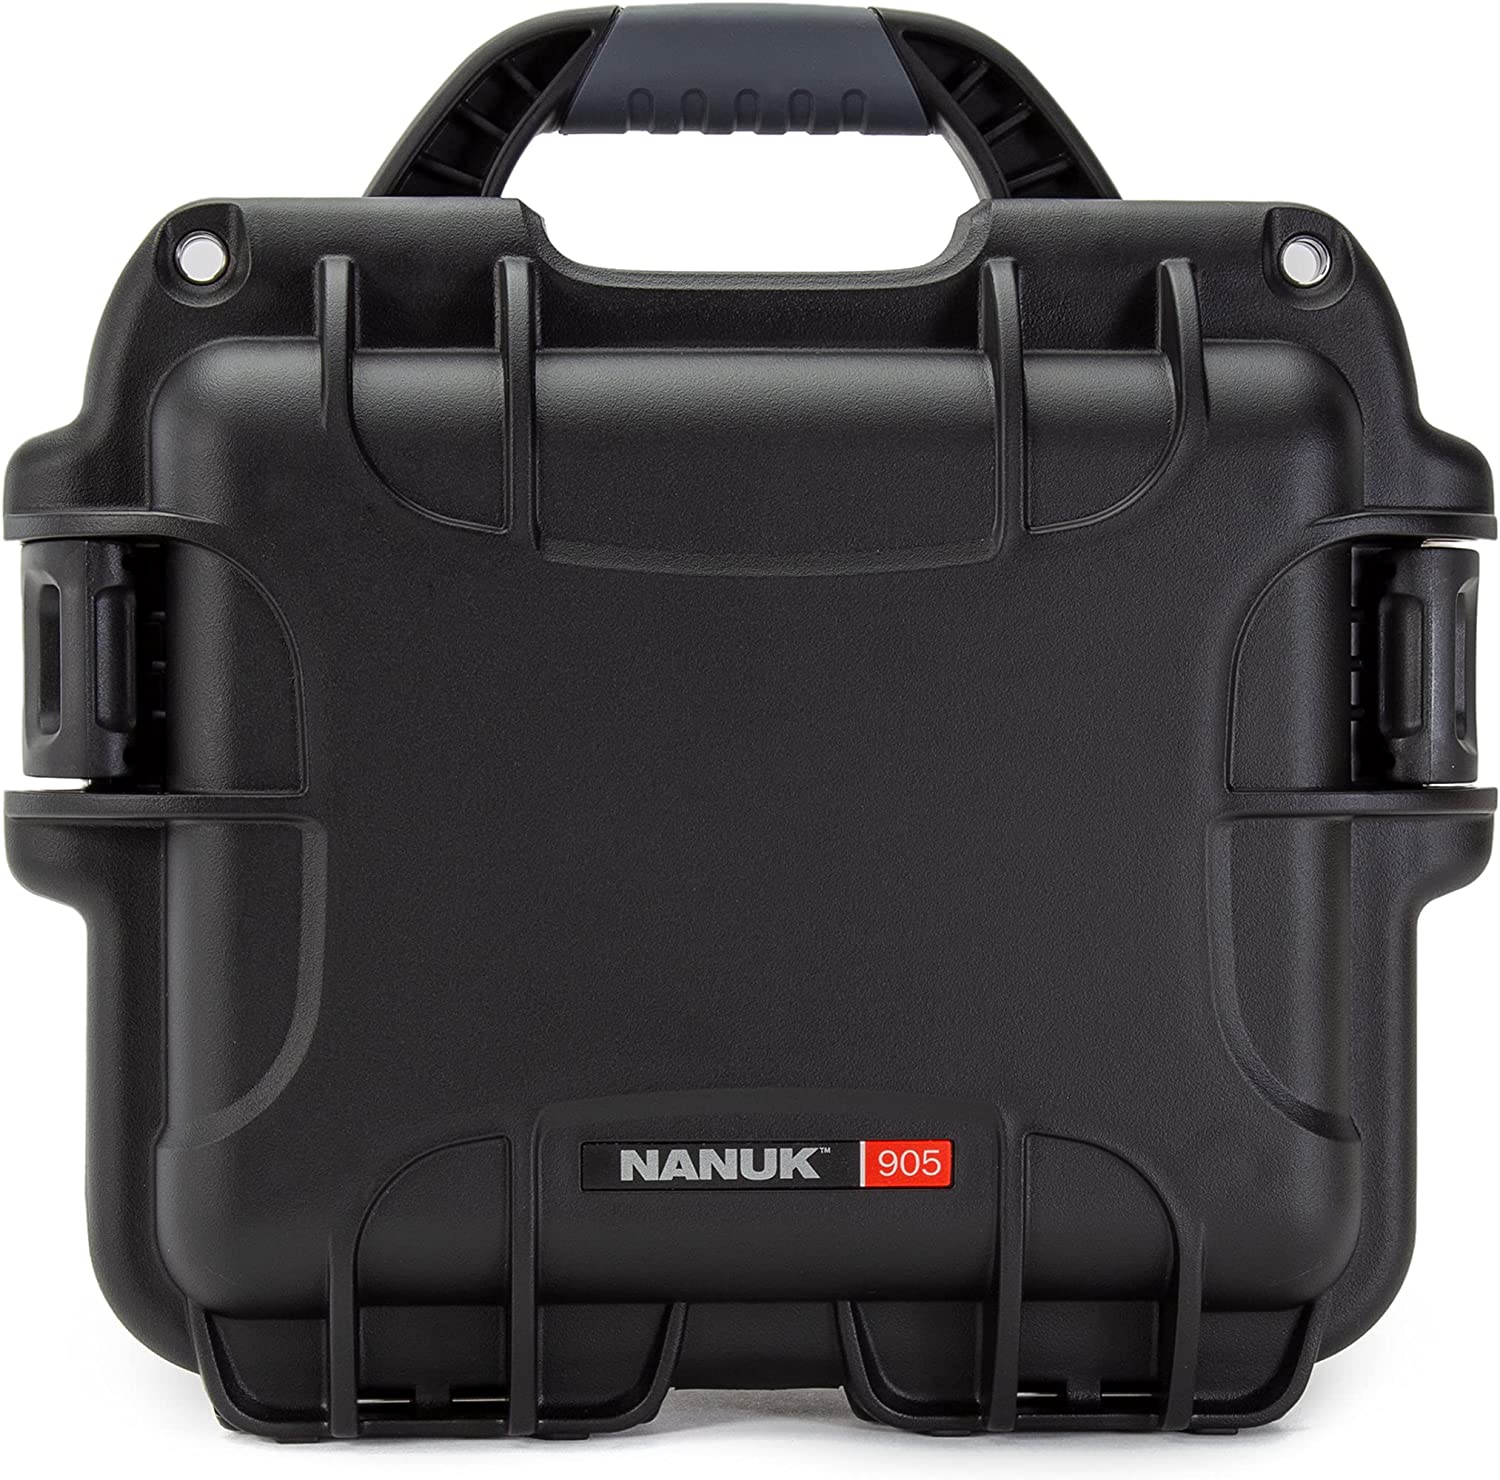 Nanuk 905 Waterproof Hard Case Empty - Black